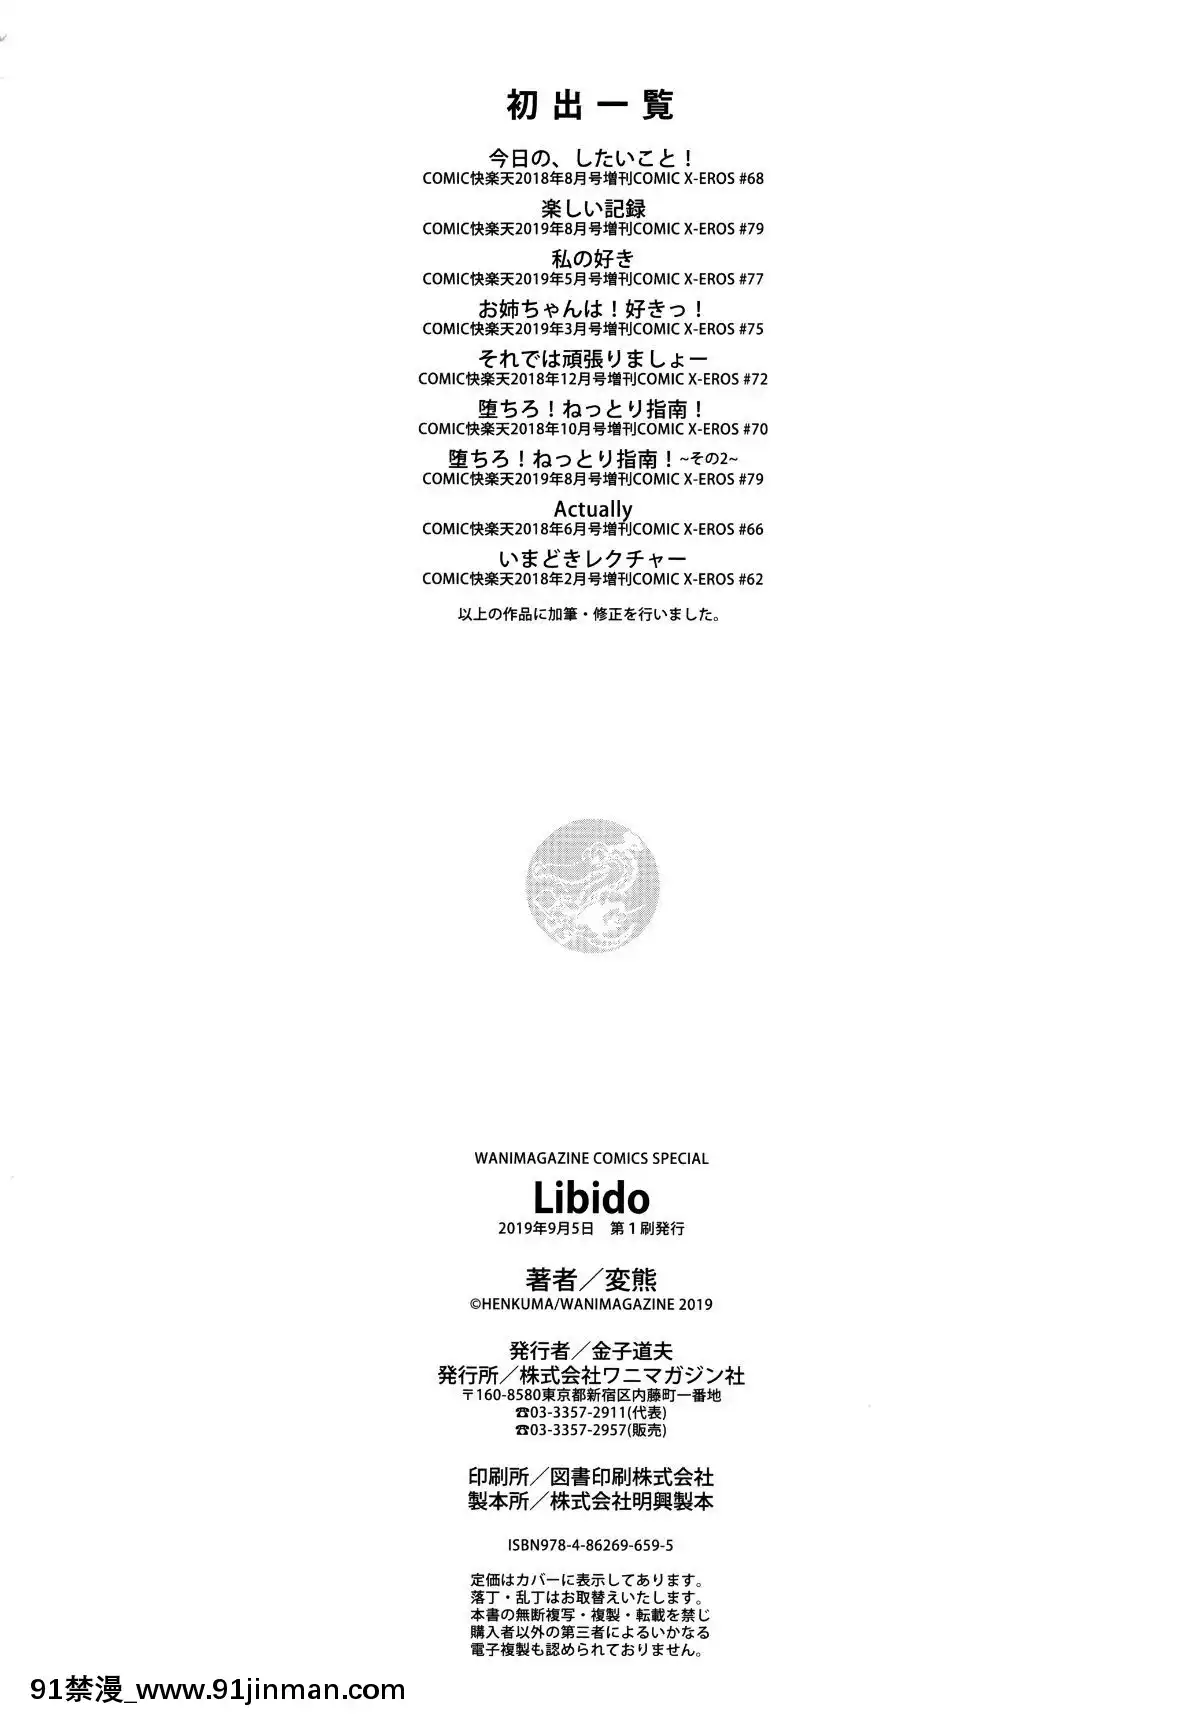 【truyện tranh nhân gian ngọc】[4K漢化組][変熊]Libido   Libido